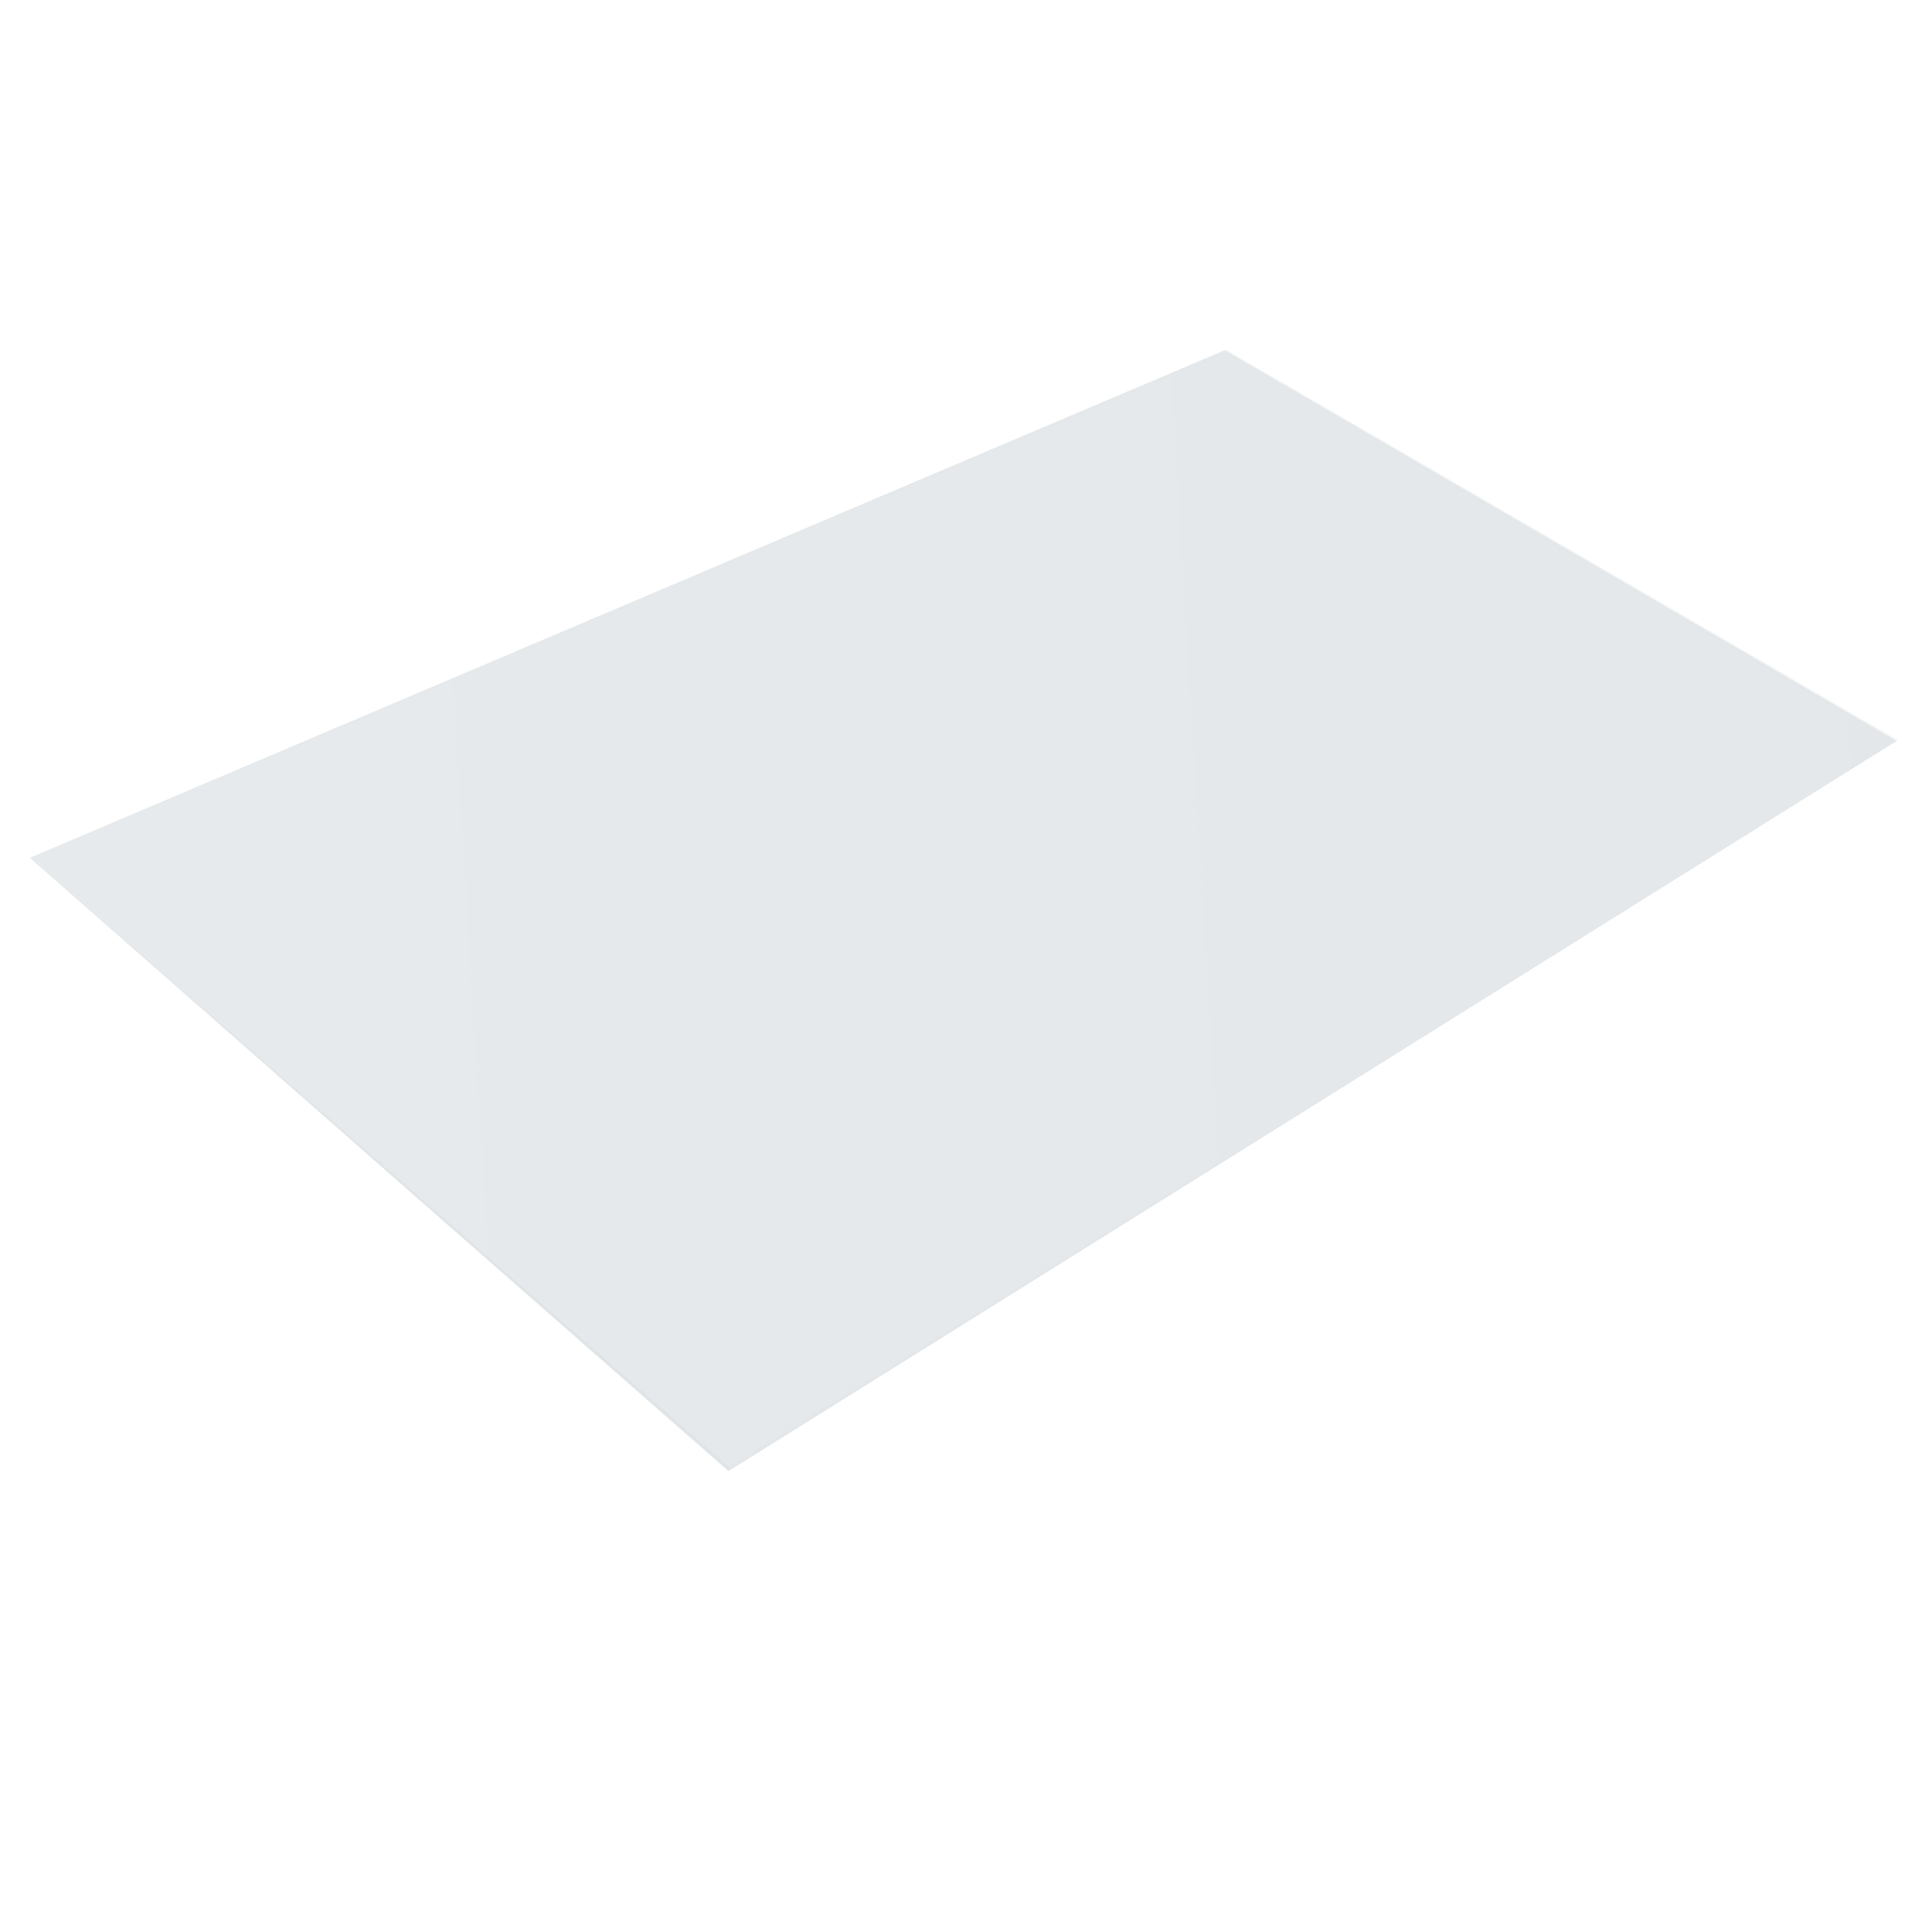 Плоский лист Чистый белый 0,65 мм Полиэстер Кровля Сервис